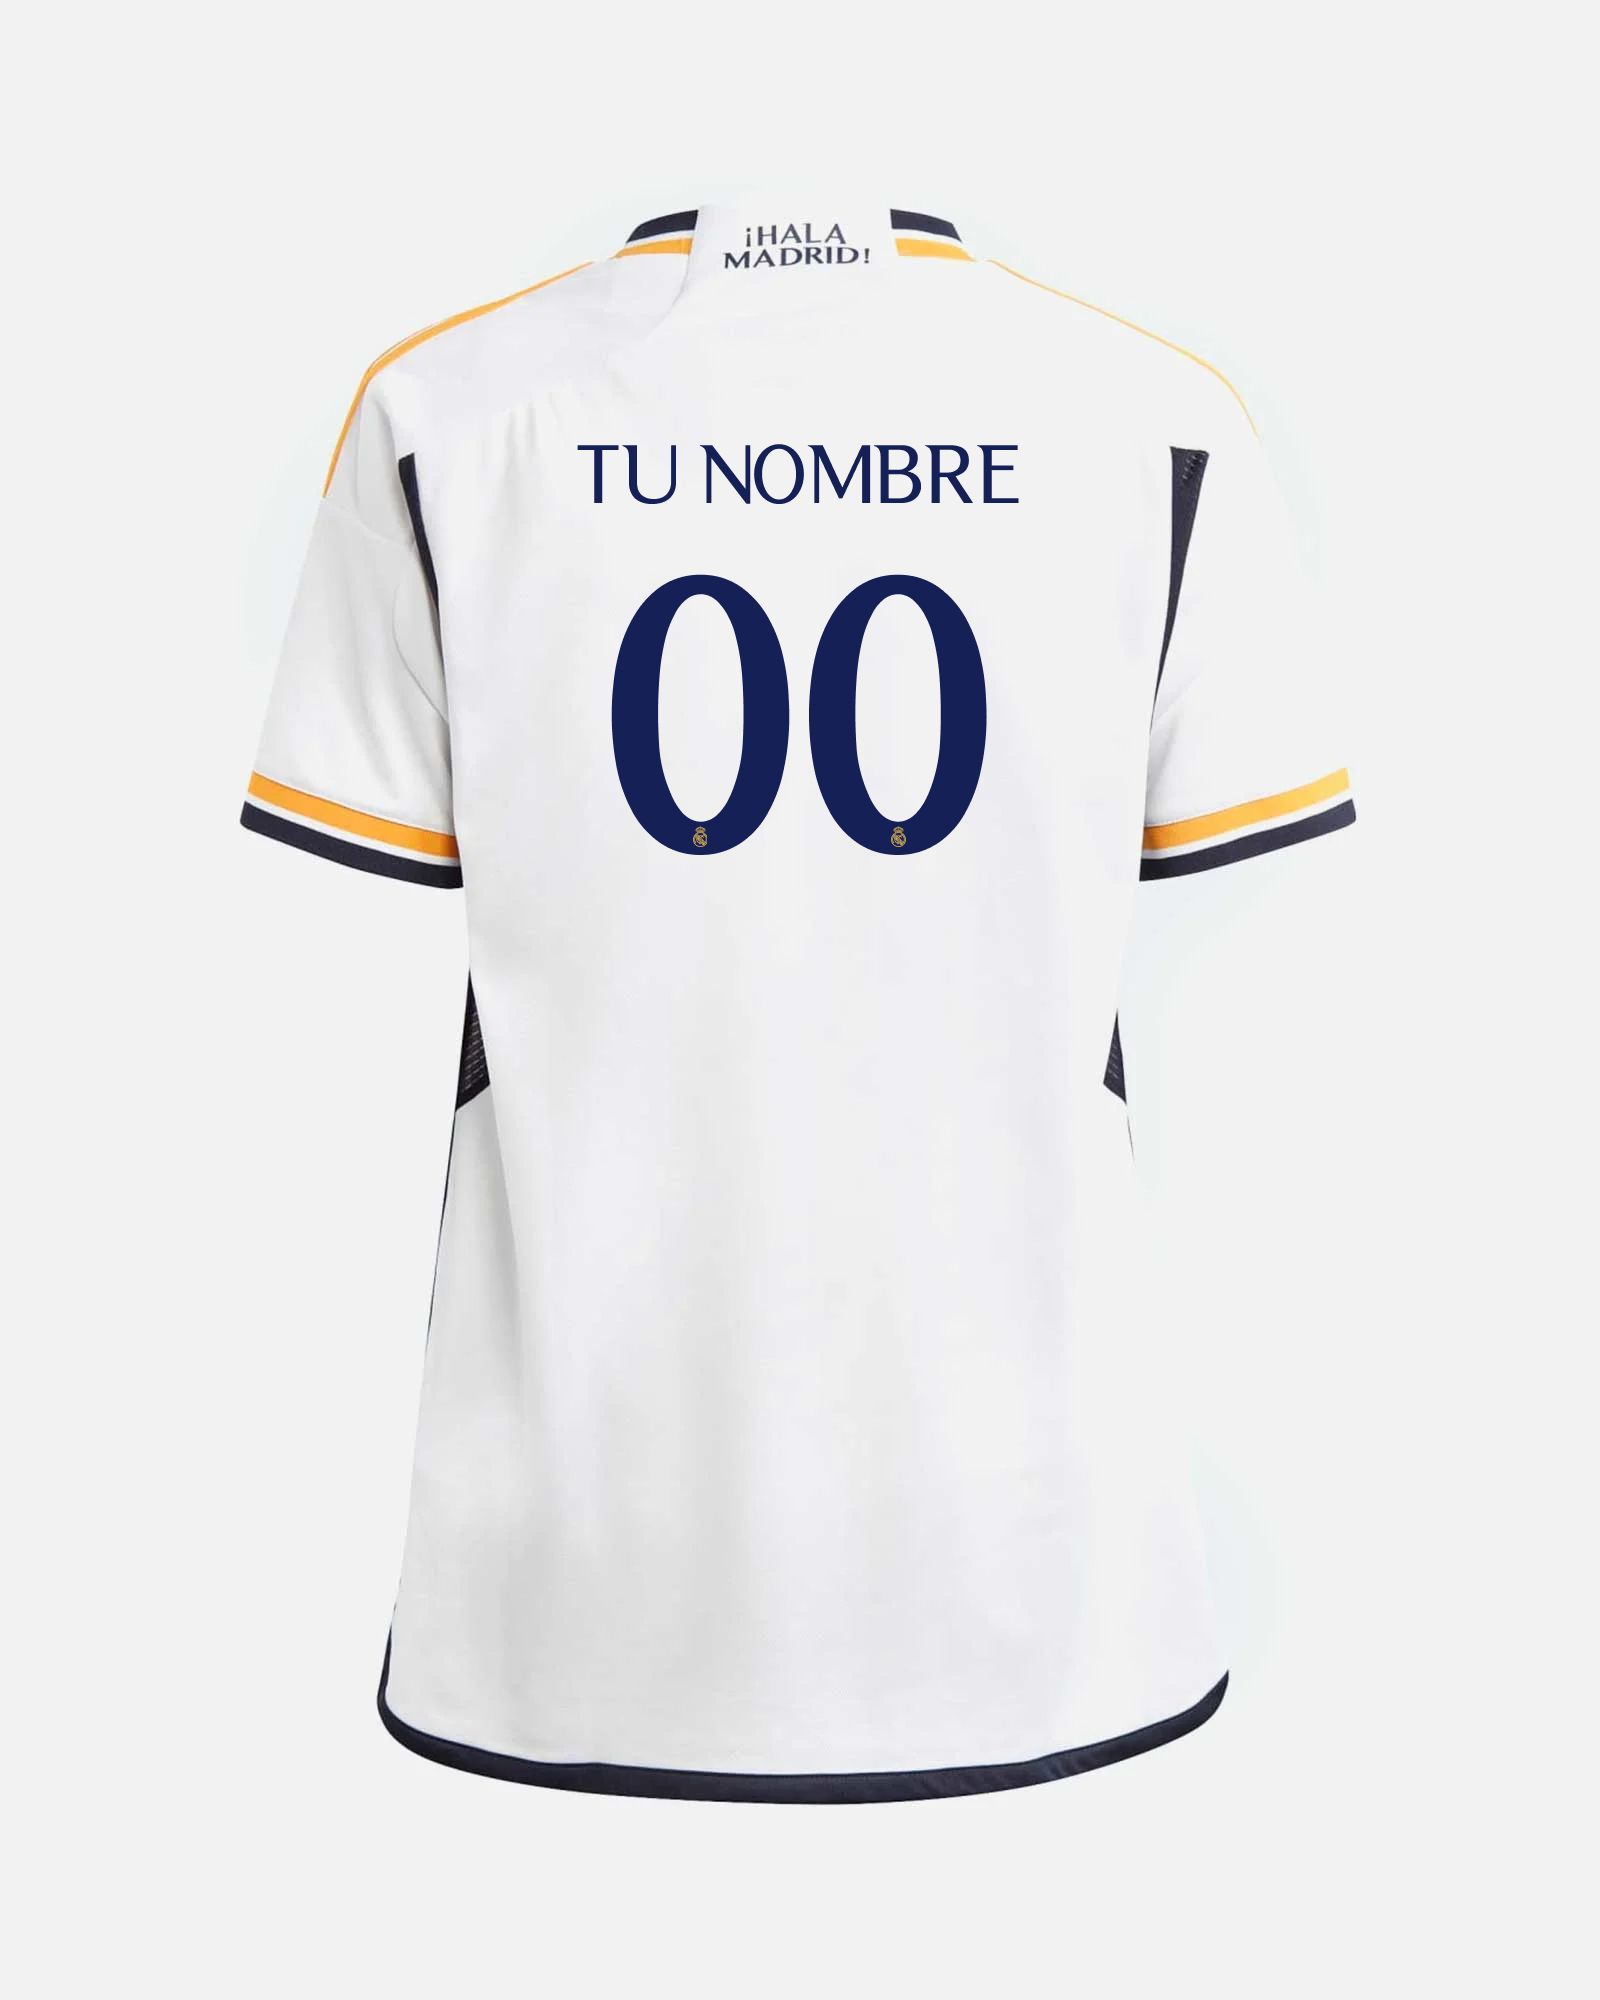 Real Madrid Camiseta Primera Equipación Personalizada con tú